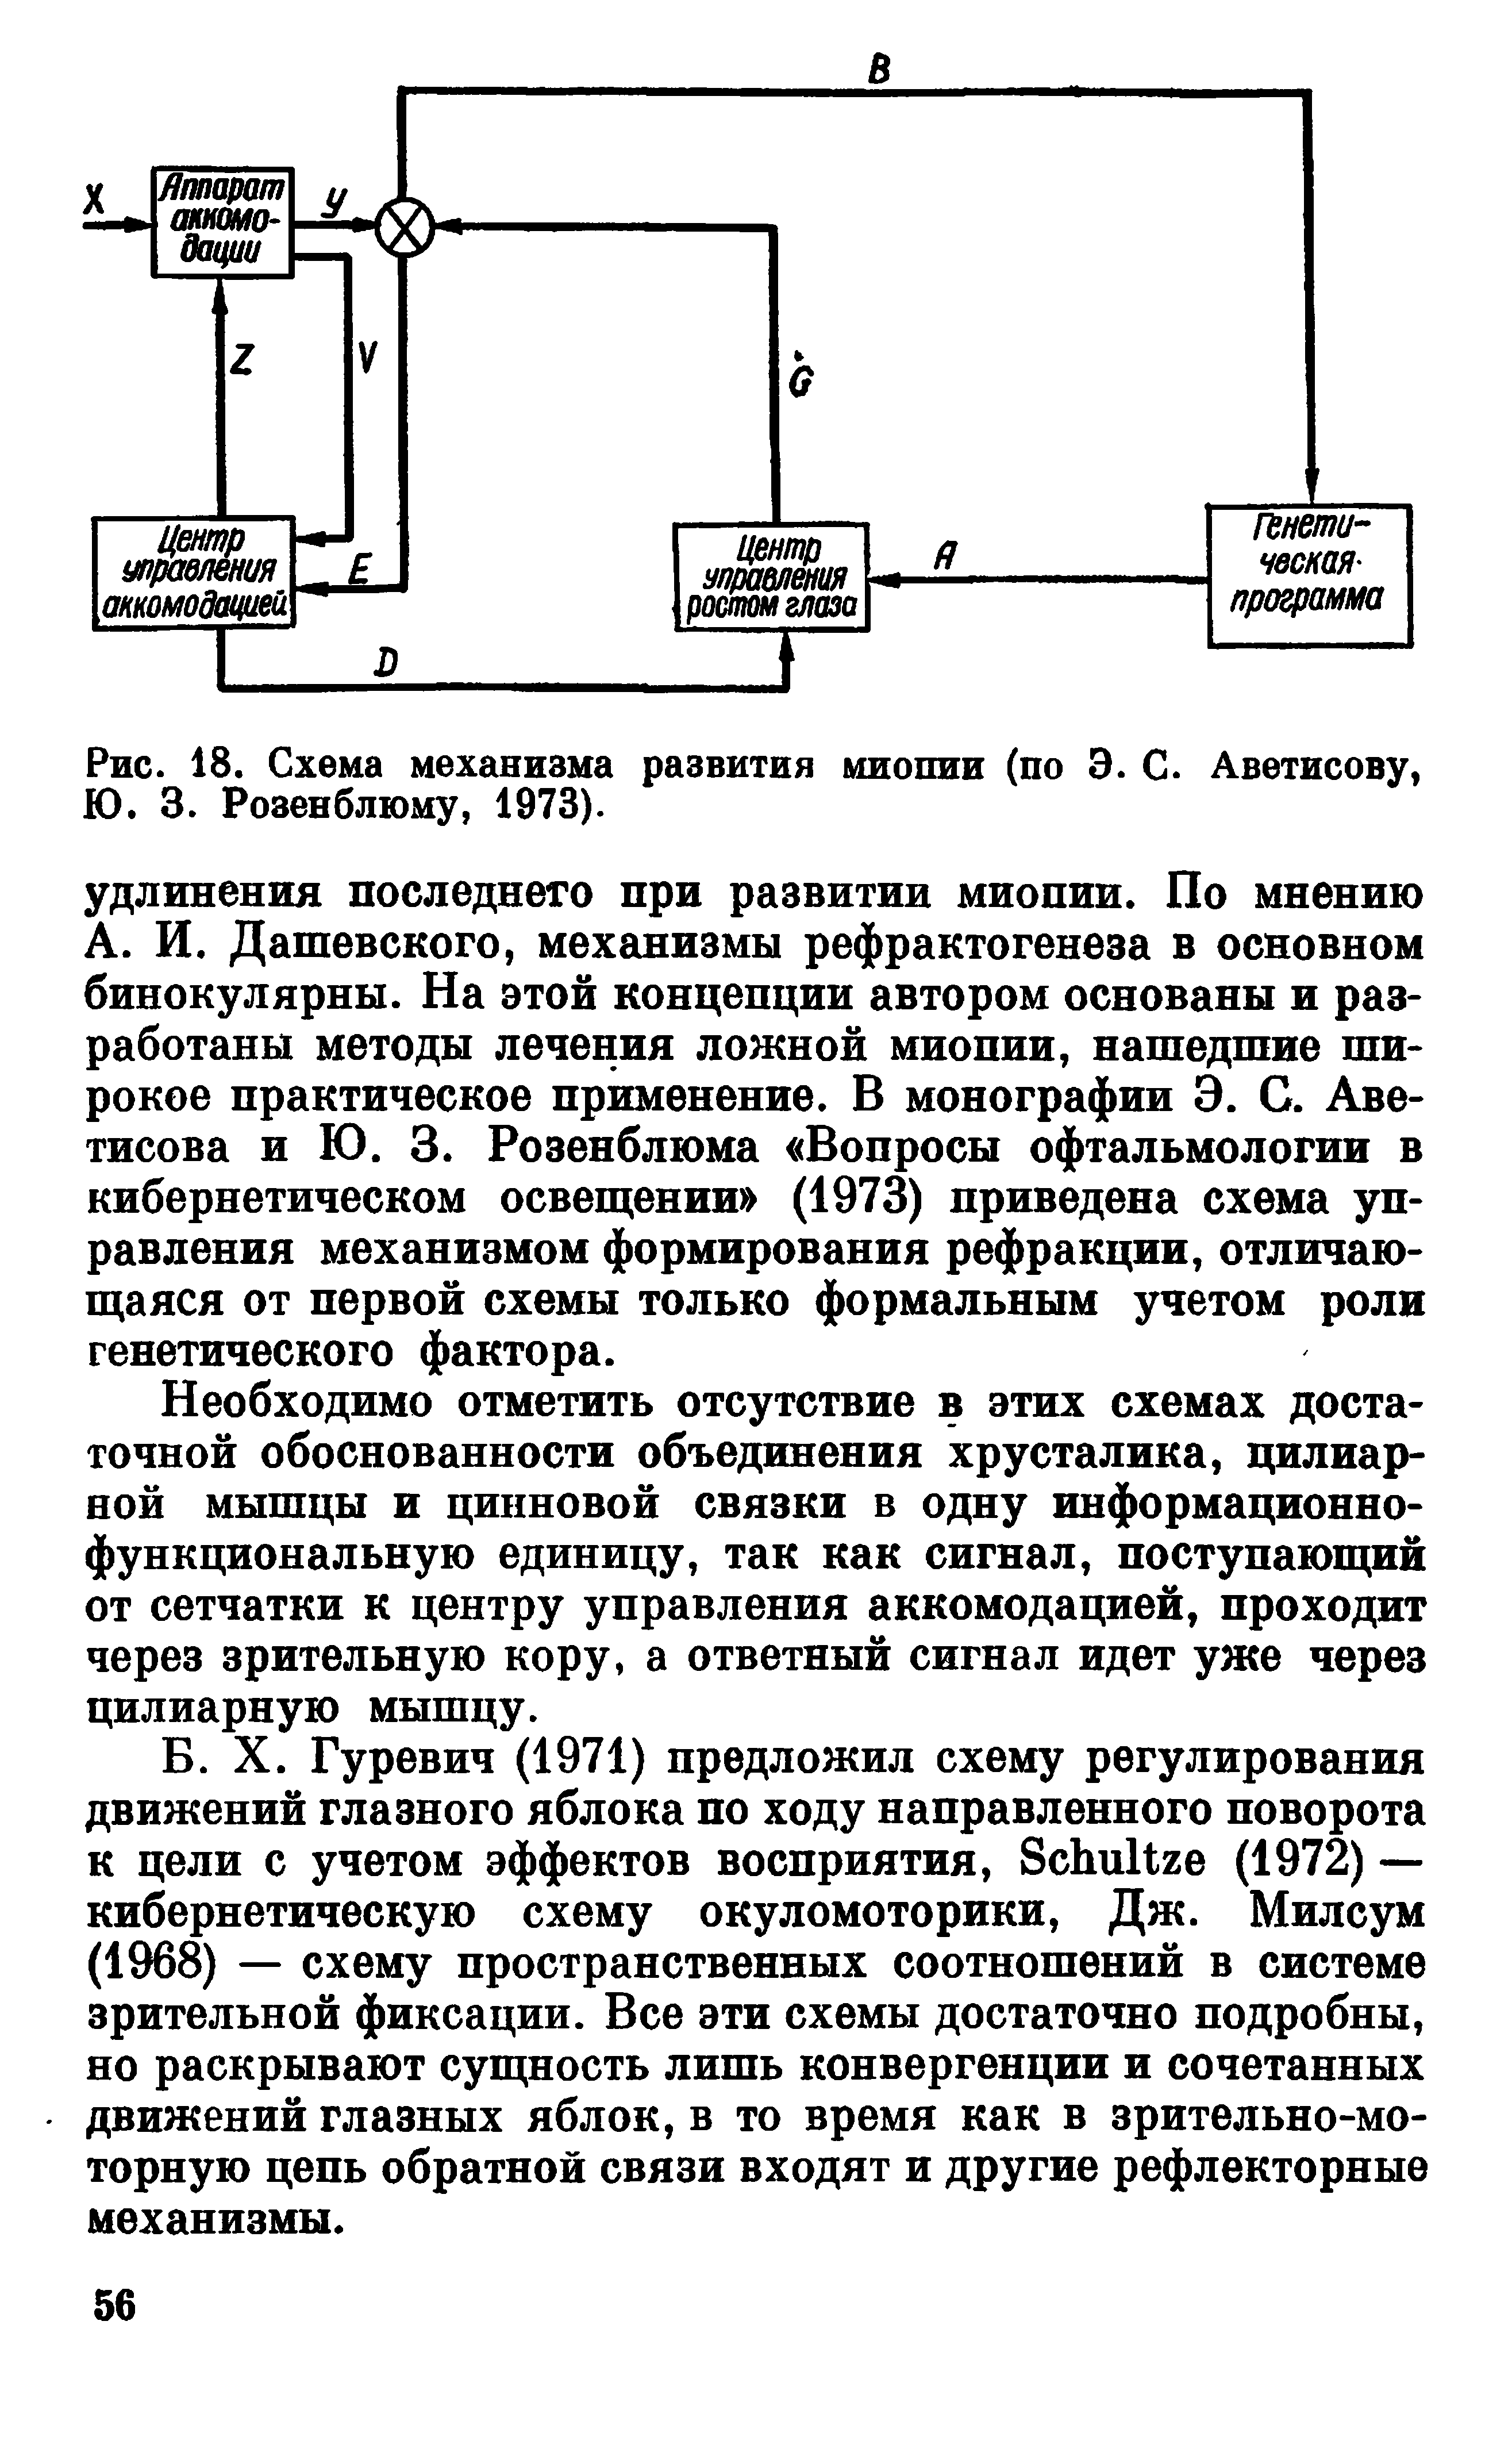 Рис. 18. Схема механизма развития миопии (по Э. С. Аветисову, Ю. 3. Розенблюму, 1973).